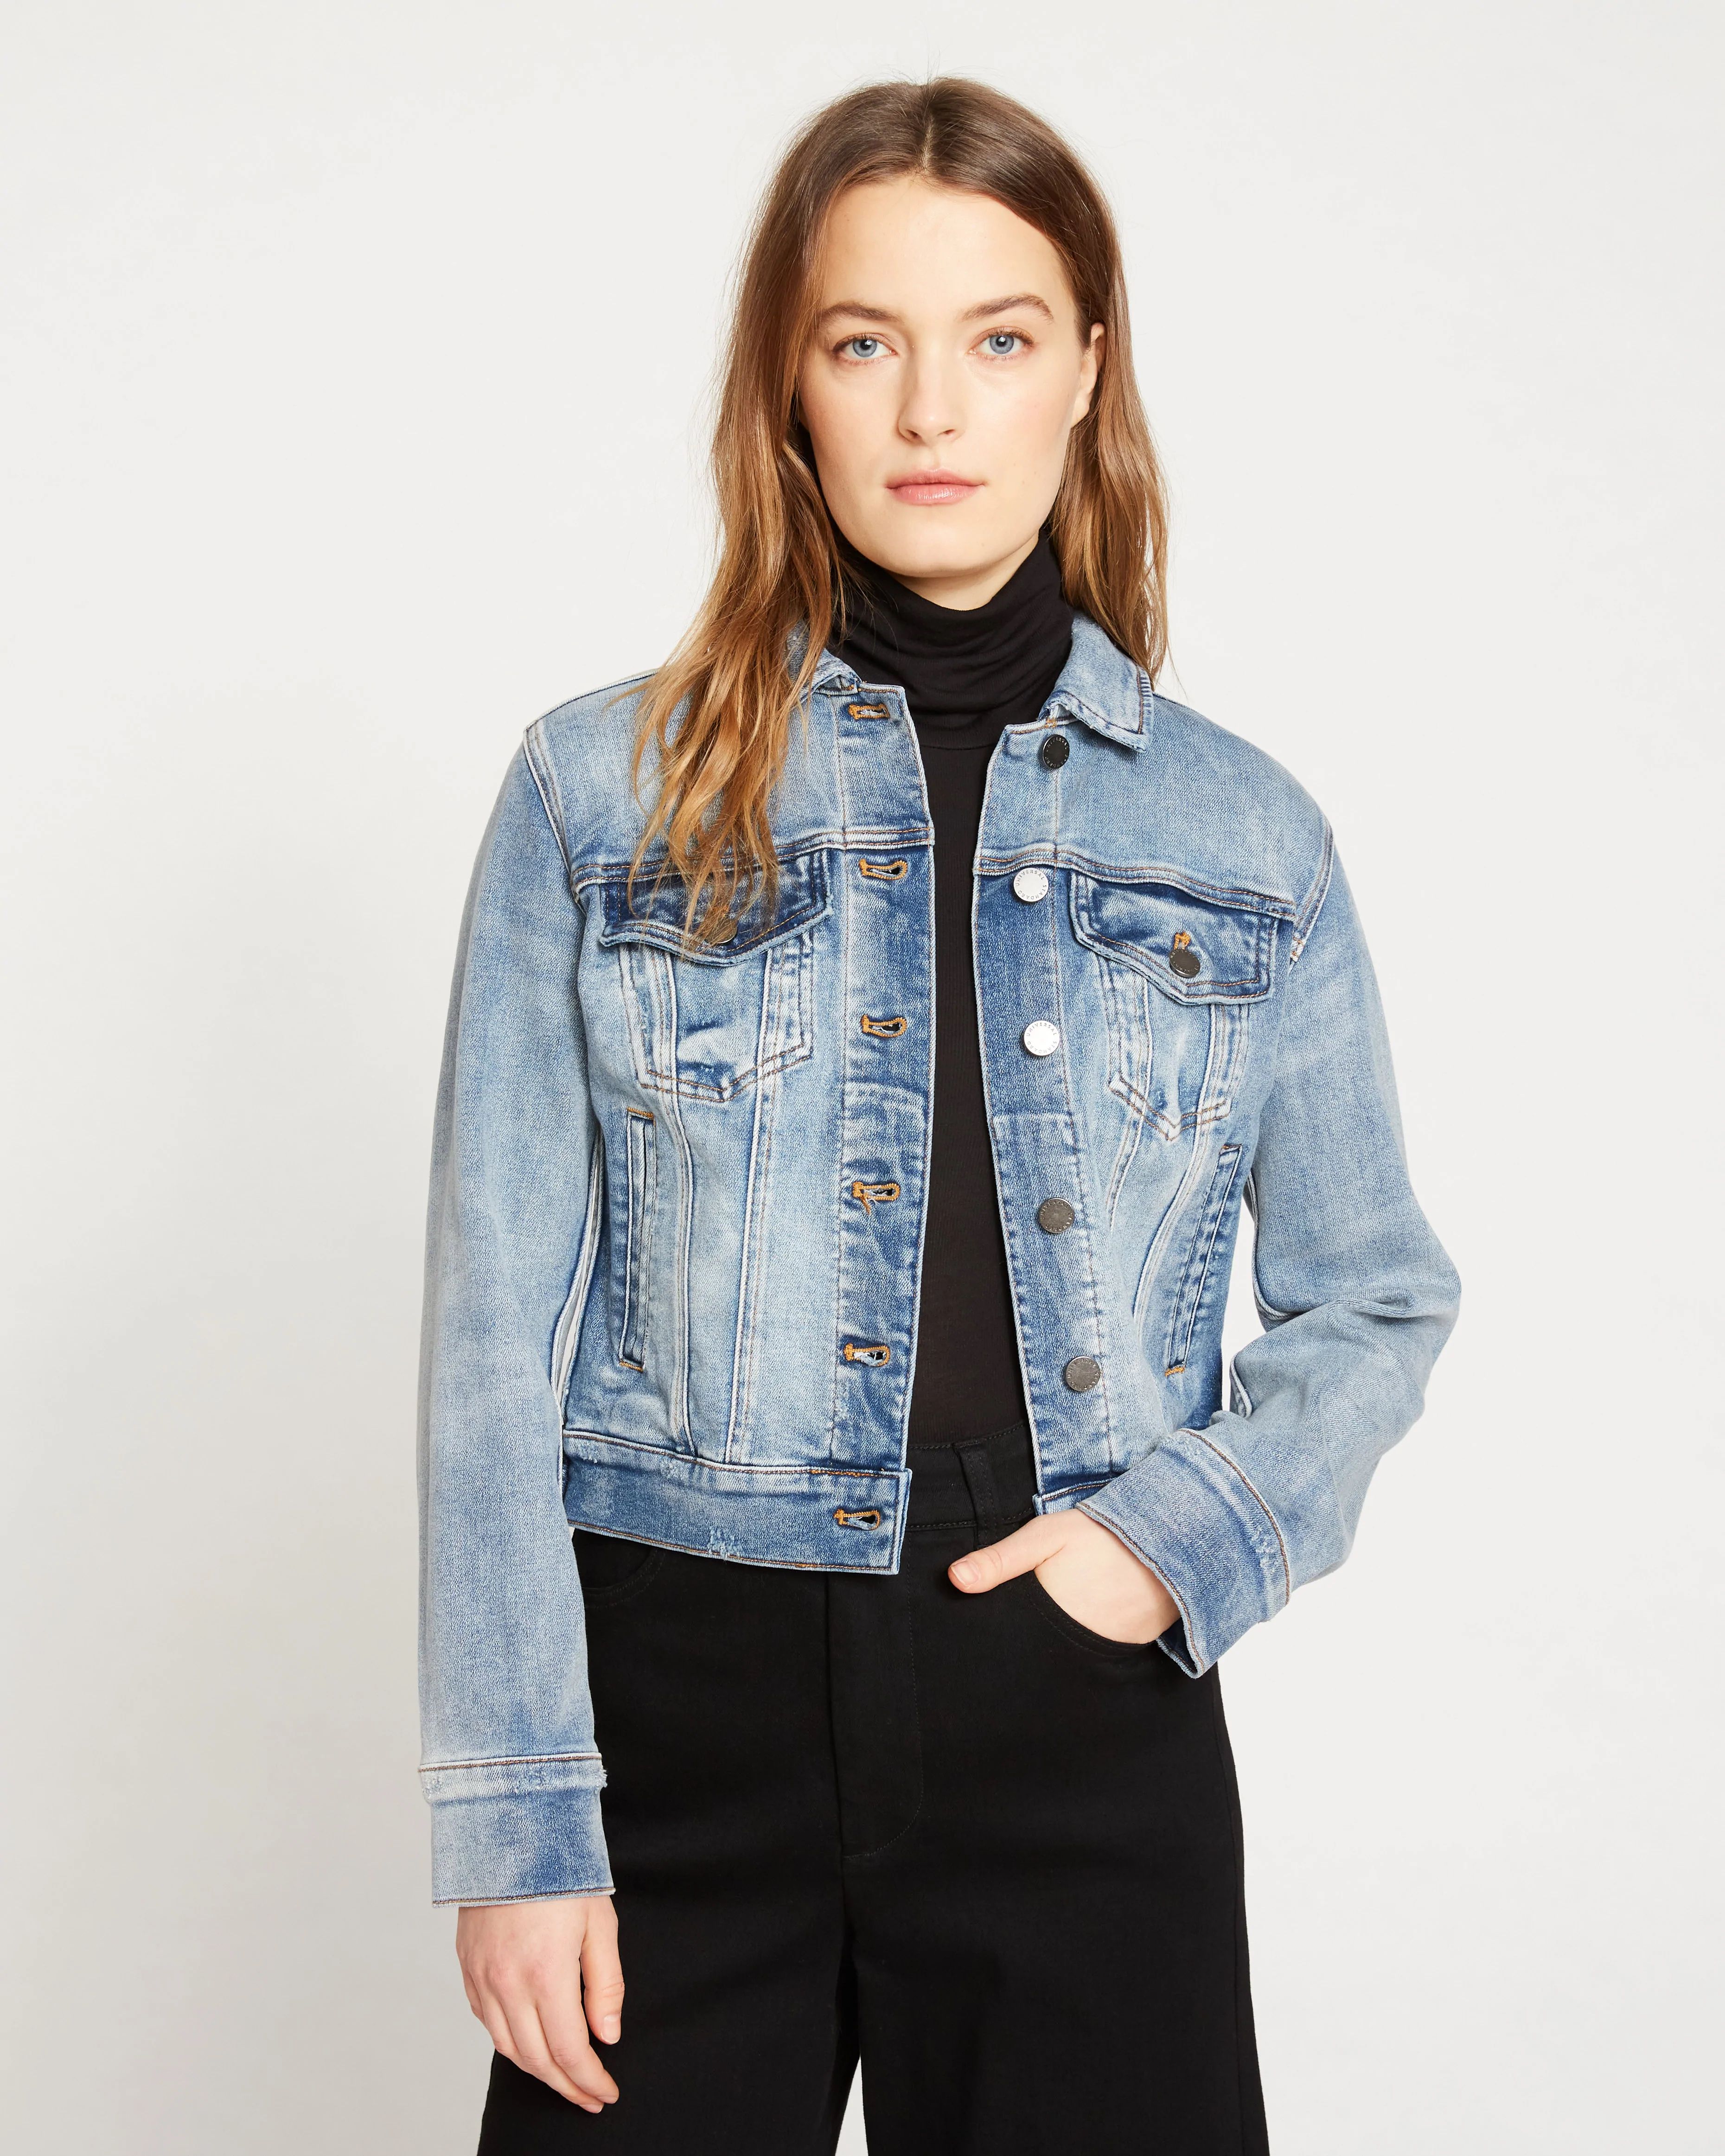 Girls Fashion jacket | Fashion, Girl fashion, Jacket style